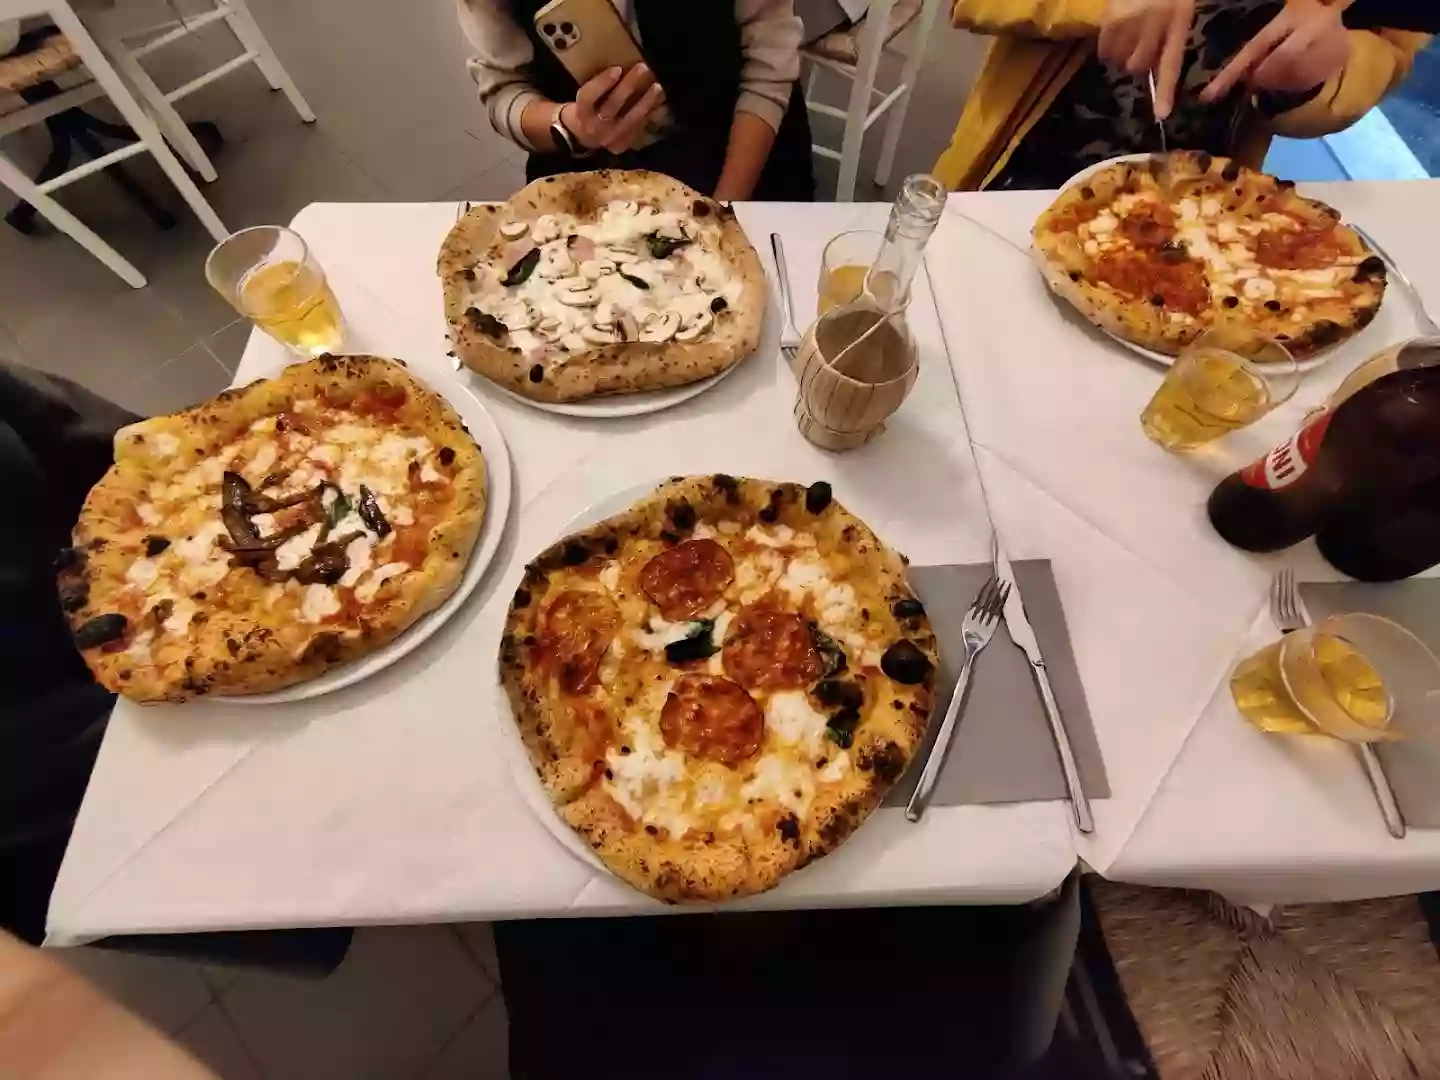 Pizzeria Chiarastella